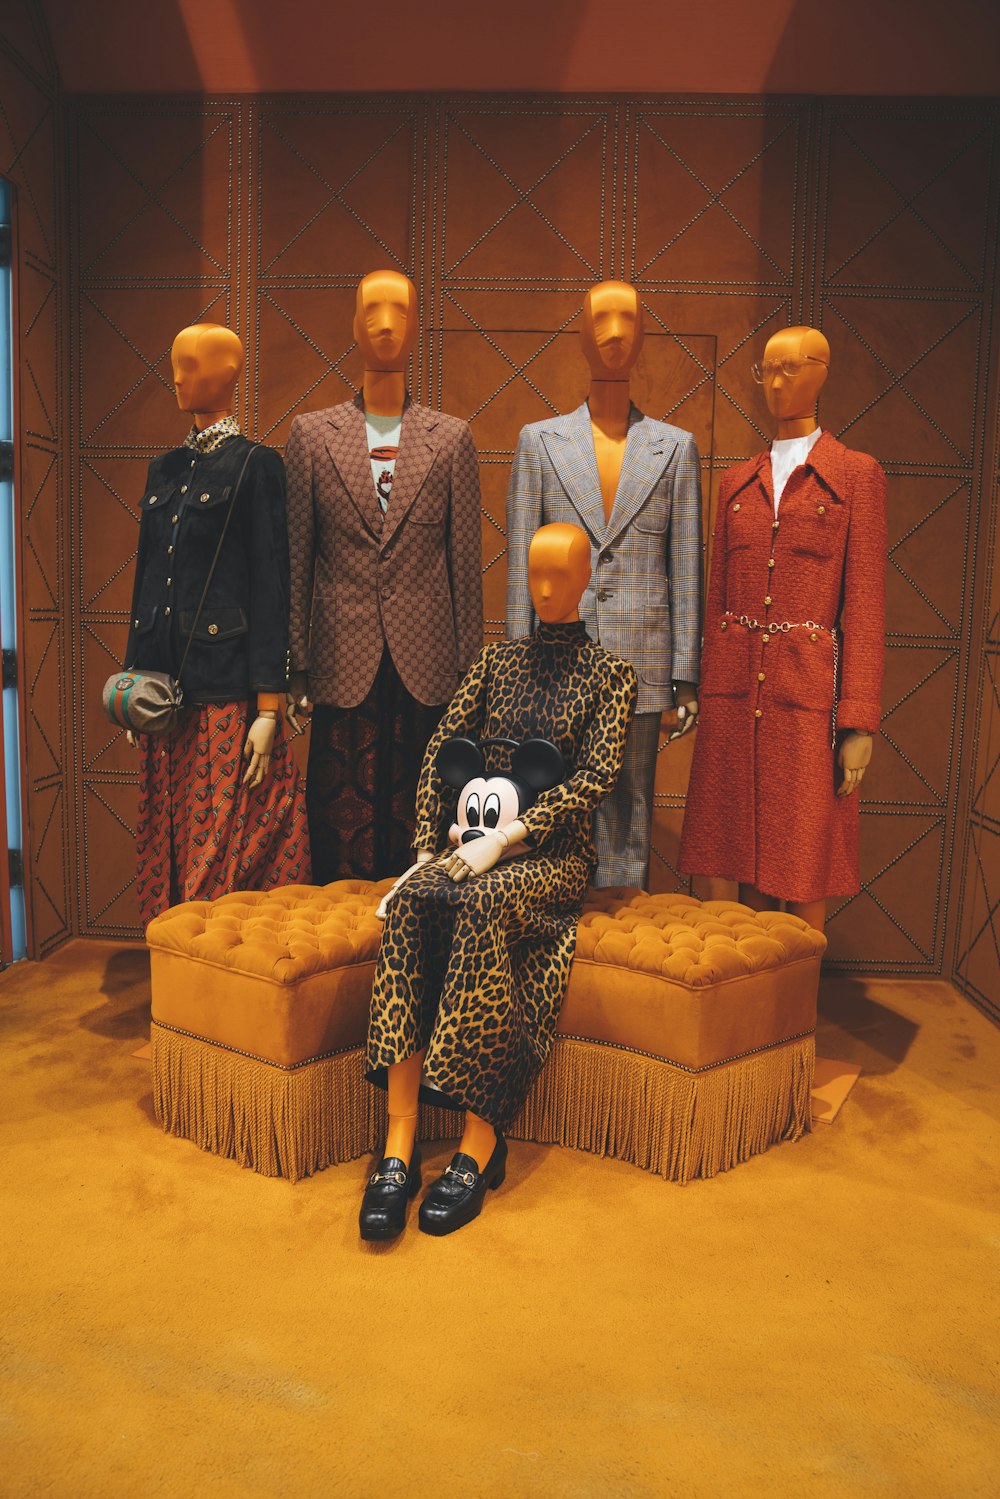 Vier Schaufensterpuppen in formellen Anzügen und eine weitere weibliche Schaufensterpuppe in einem braunen Leopardenkleid mit langen Ärmeln, die auf einer orangefarbenen Ottomane sitzt